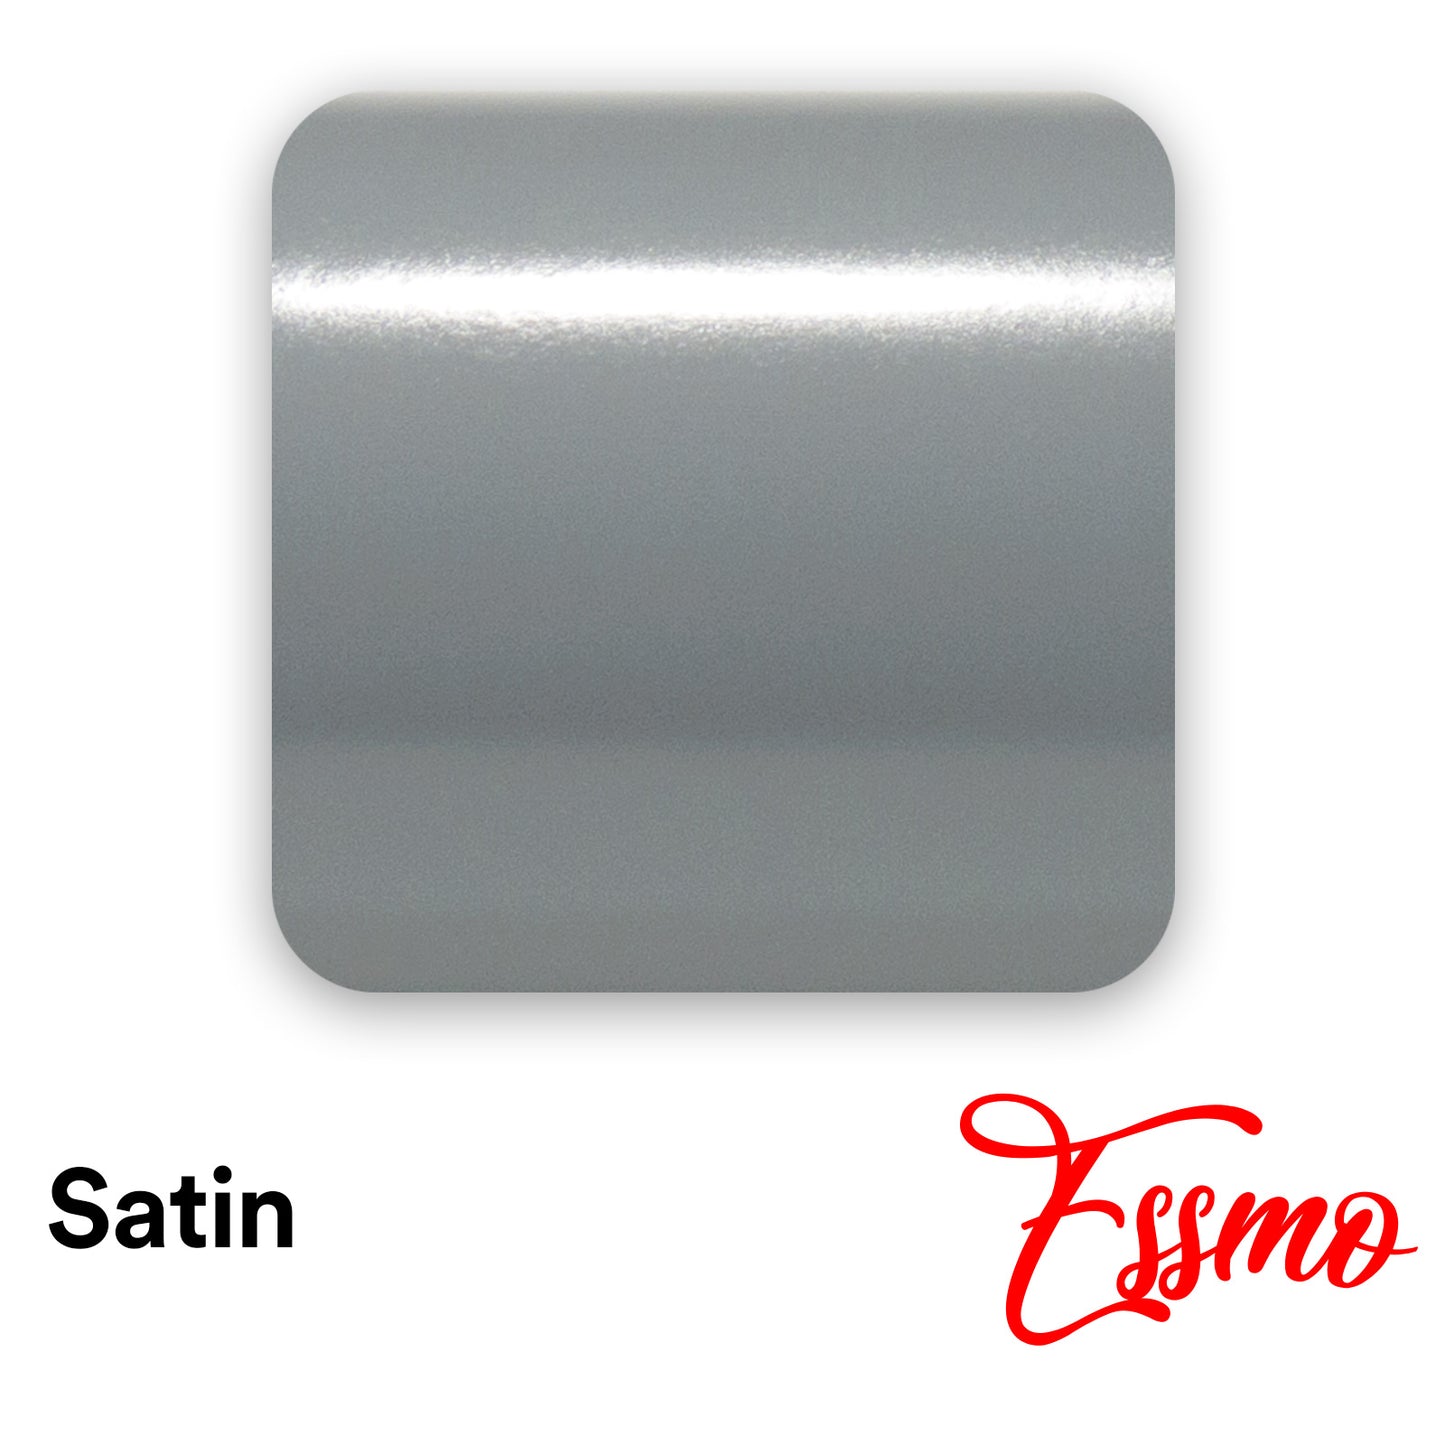 Satin Charcoal Gray Matte Flat Vinyl Wrap